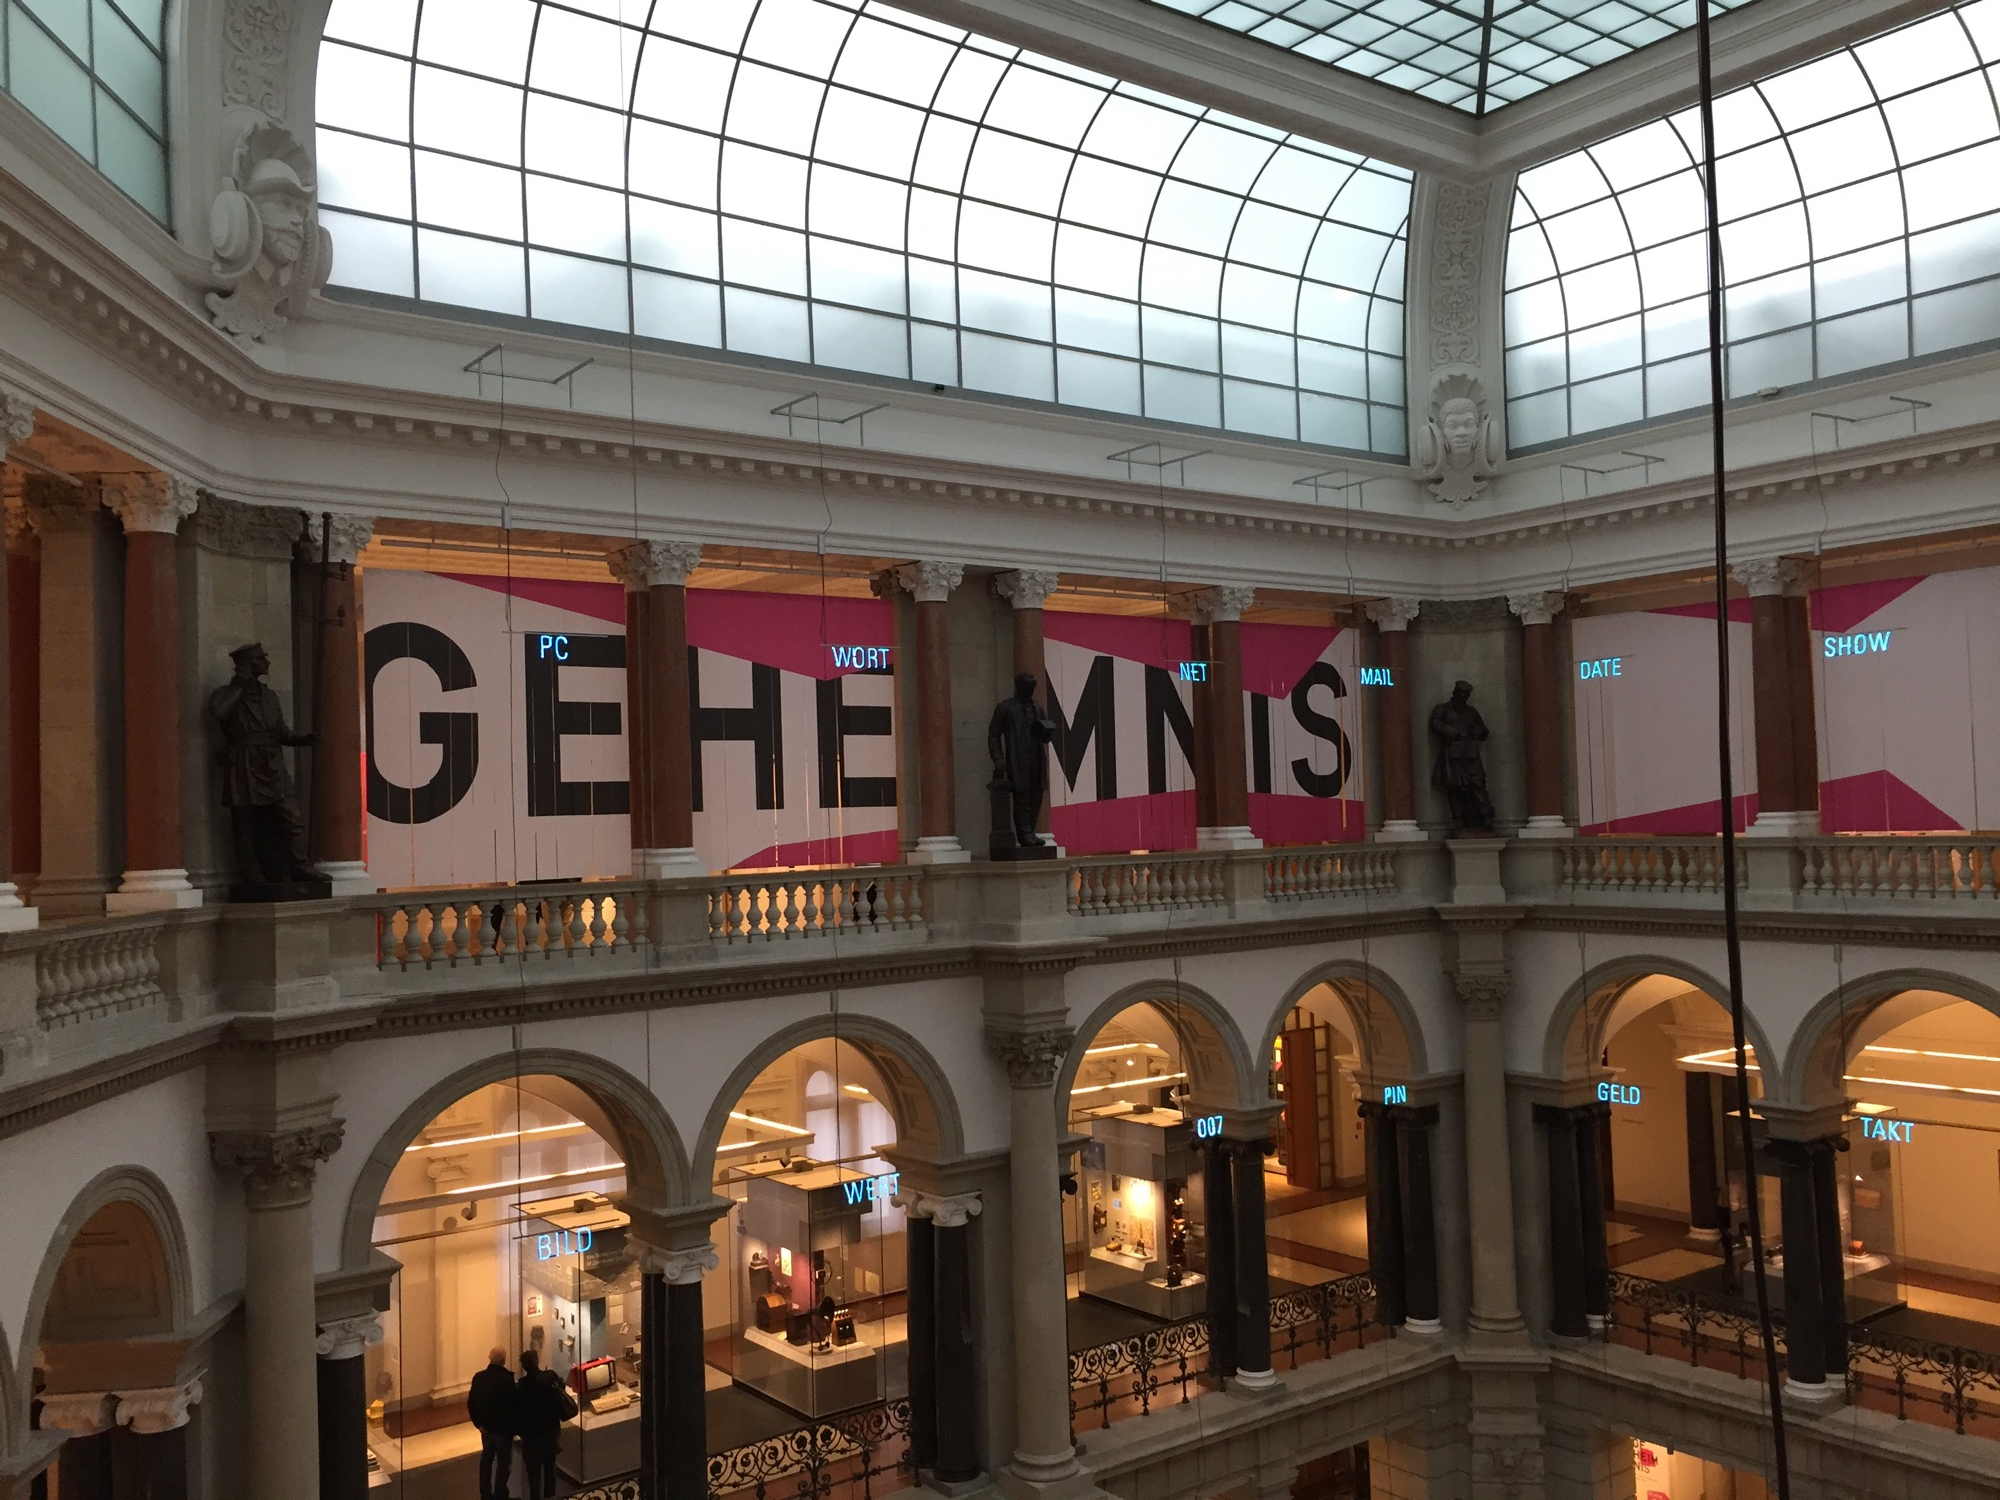 Blick auf die Geheimnisausstellung im Kuppelsaal des Museums für Kommunikation in Berlin